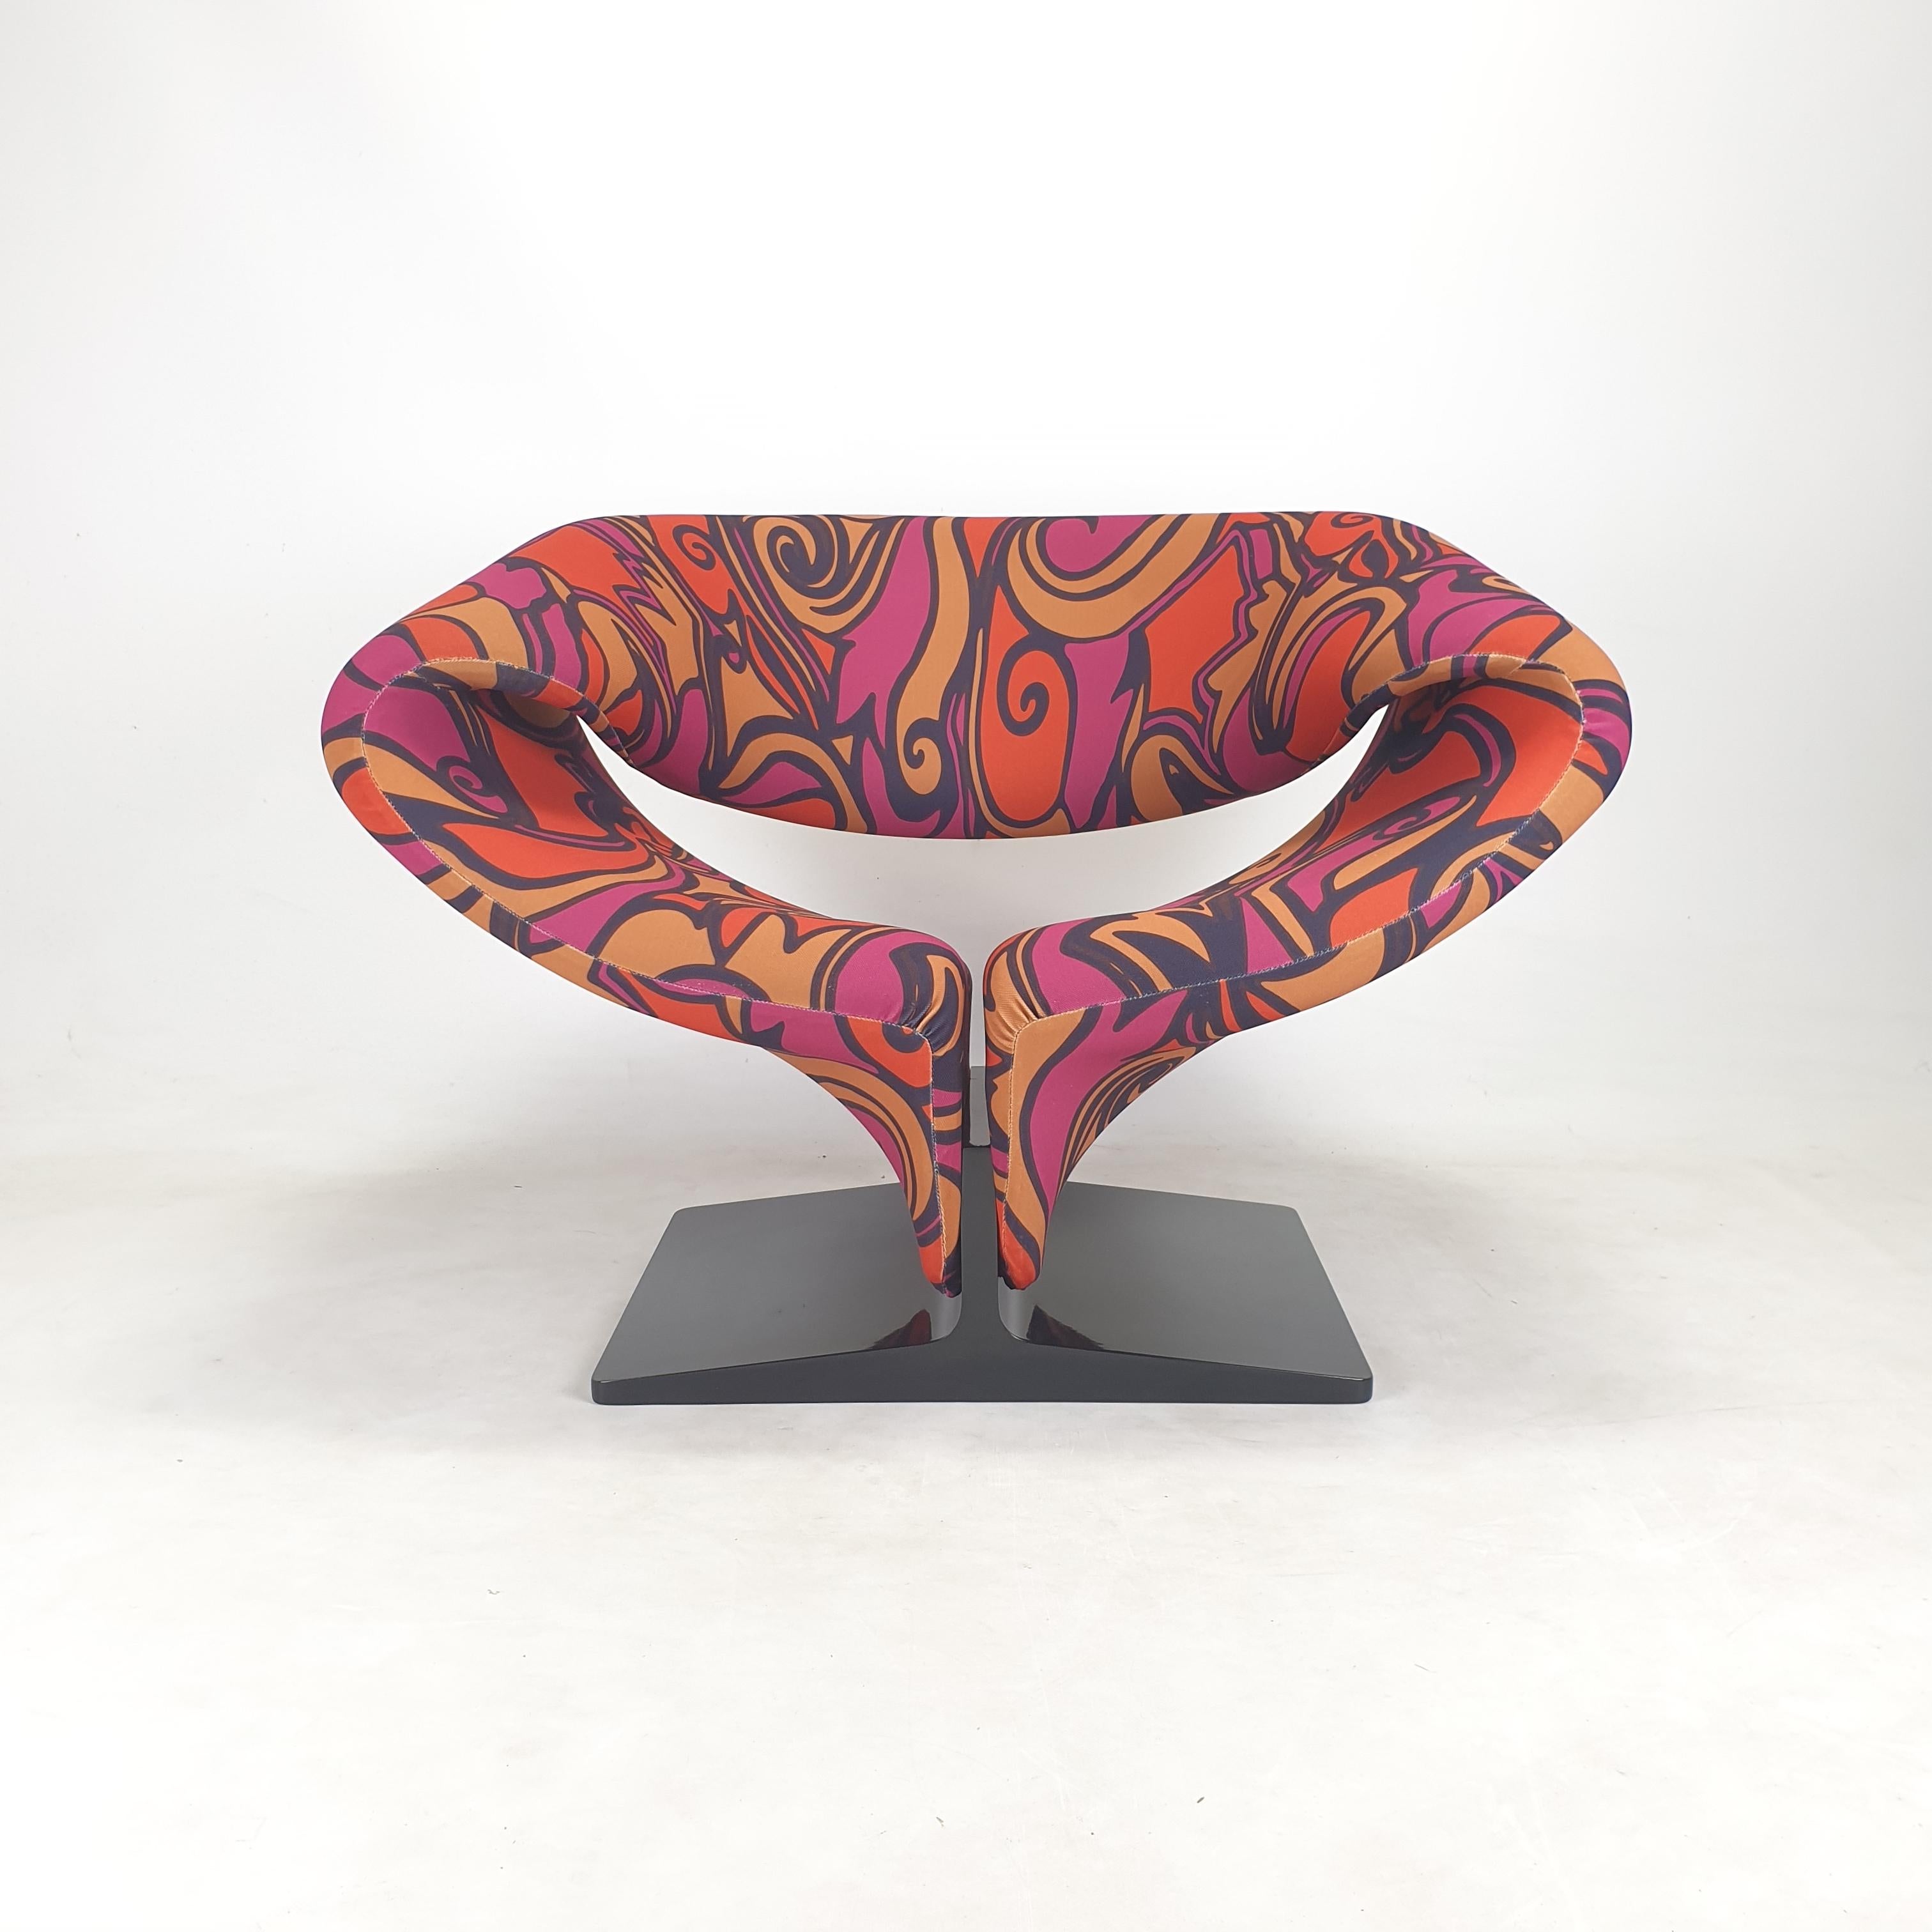 Amazing Ribbon Chair in einer sehr seltenen Ausgabe.
Es wurde in den 60er Jahren von dem berühmten Pierre Paulin (Frankreich) entworfen und von Artifort (Niederlande) hergestellt. 
Dieses ikonische Stück wurde in den 2000er Jahren hergestellt.

Der